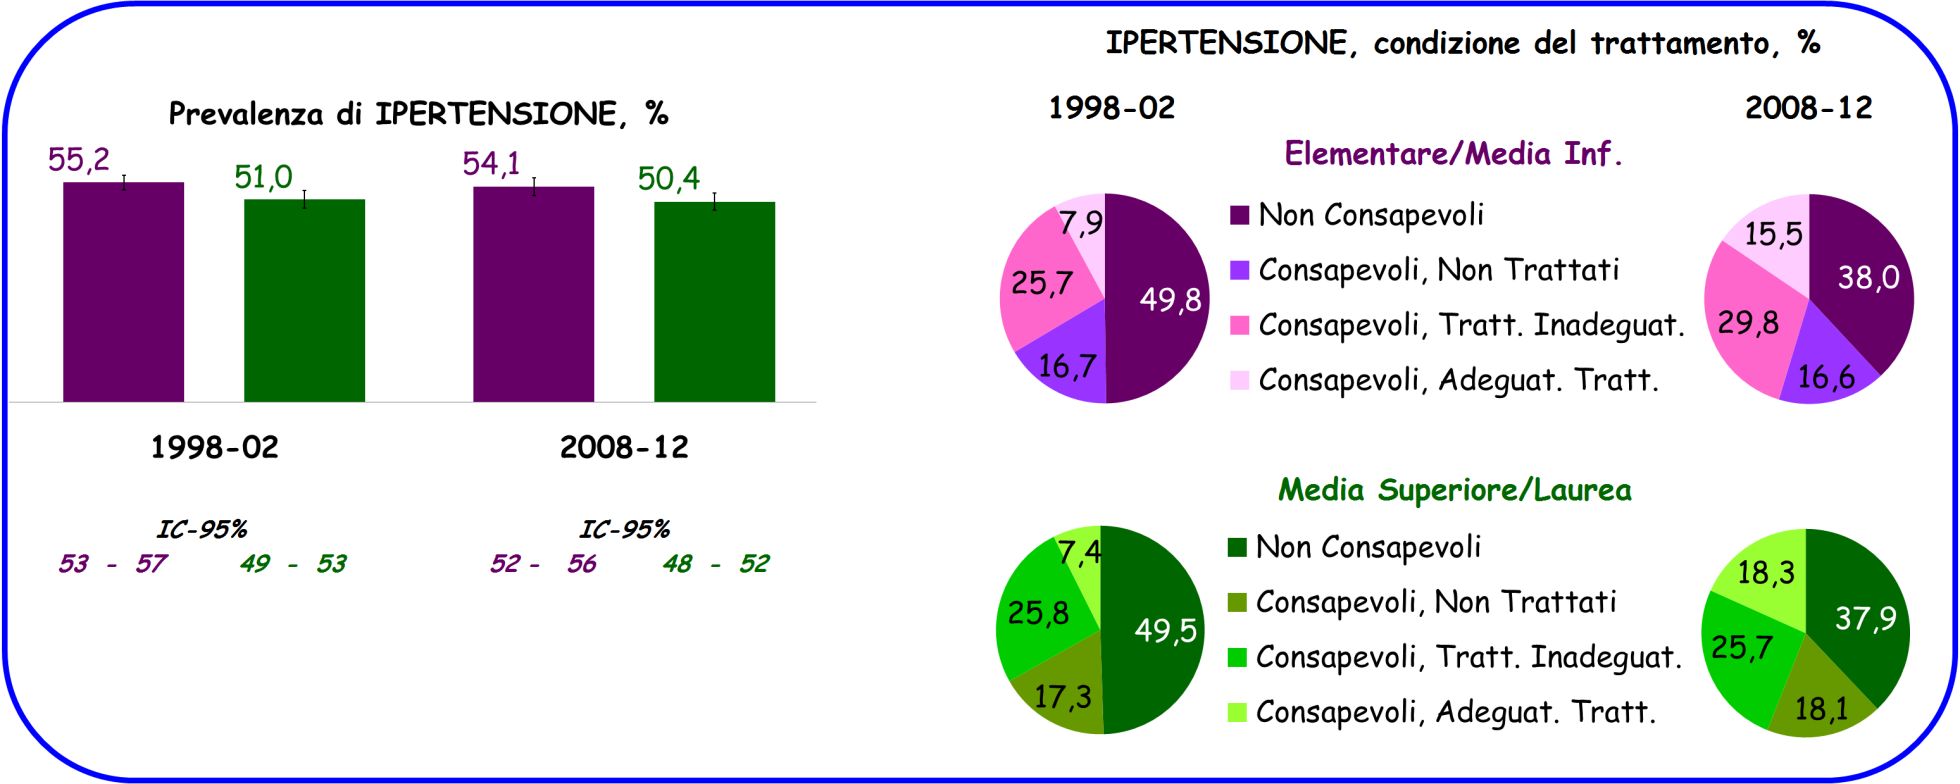 PRESSIONE ARTERIOSA: Confronto tra 1998-2002 e 2008-2012; Età, 35-74 anni.